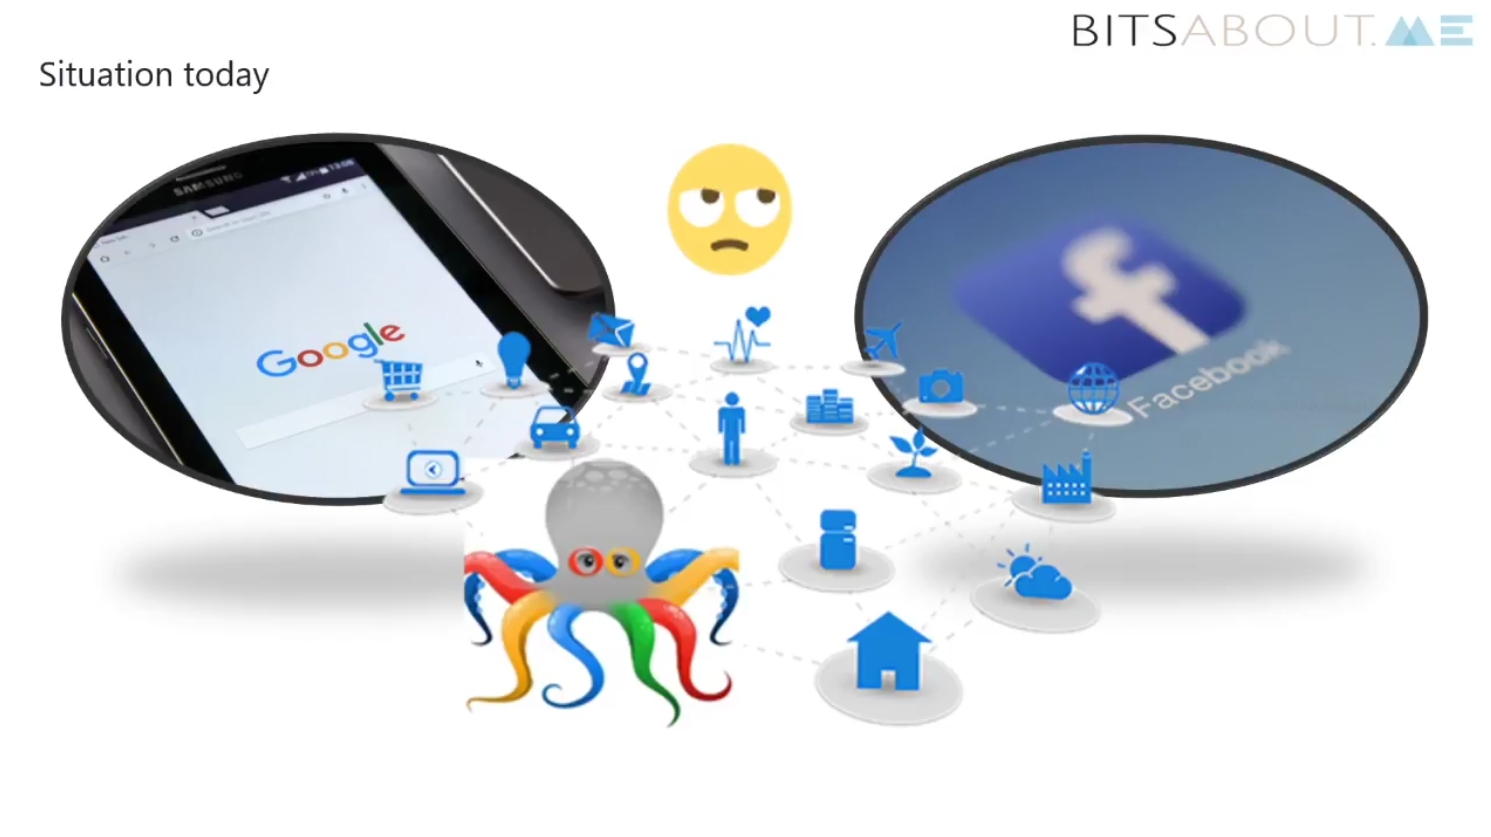 Bitsaboutme lanciert Marktplatz für Nutzerdatenhandel